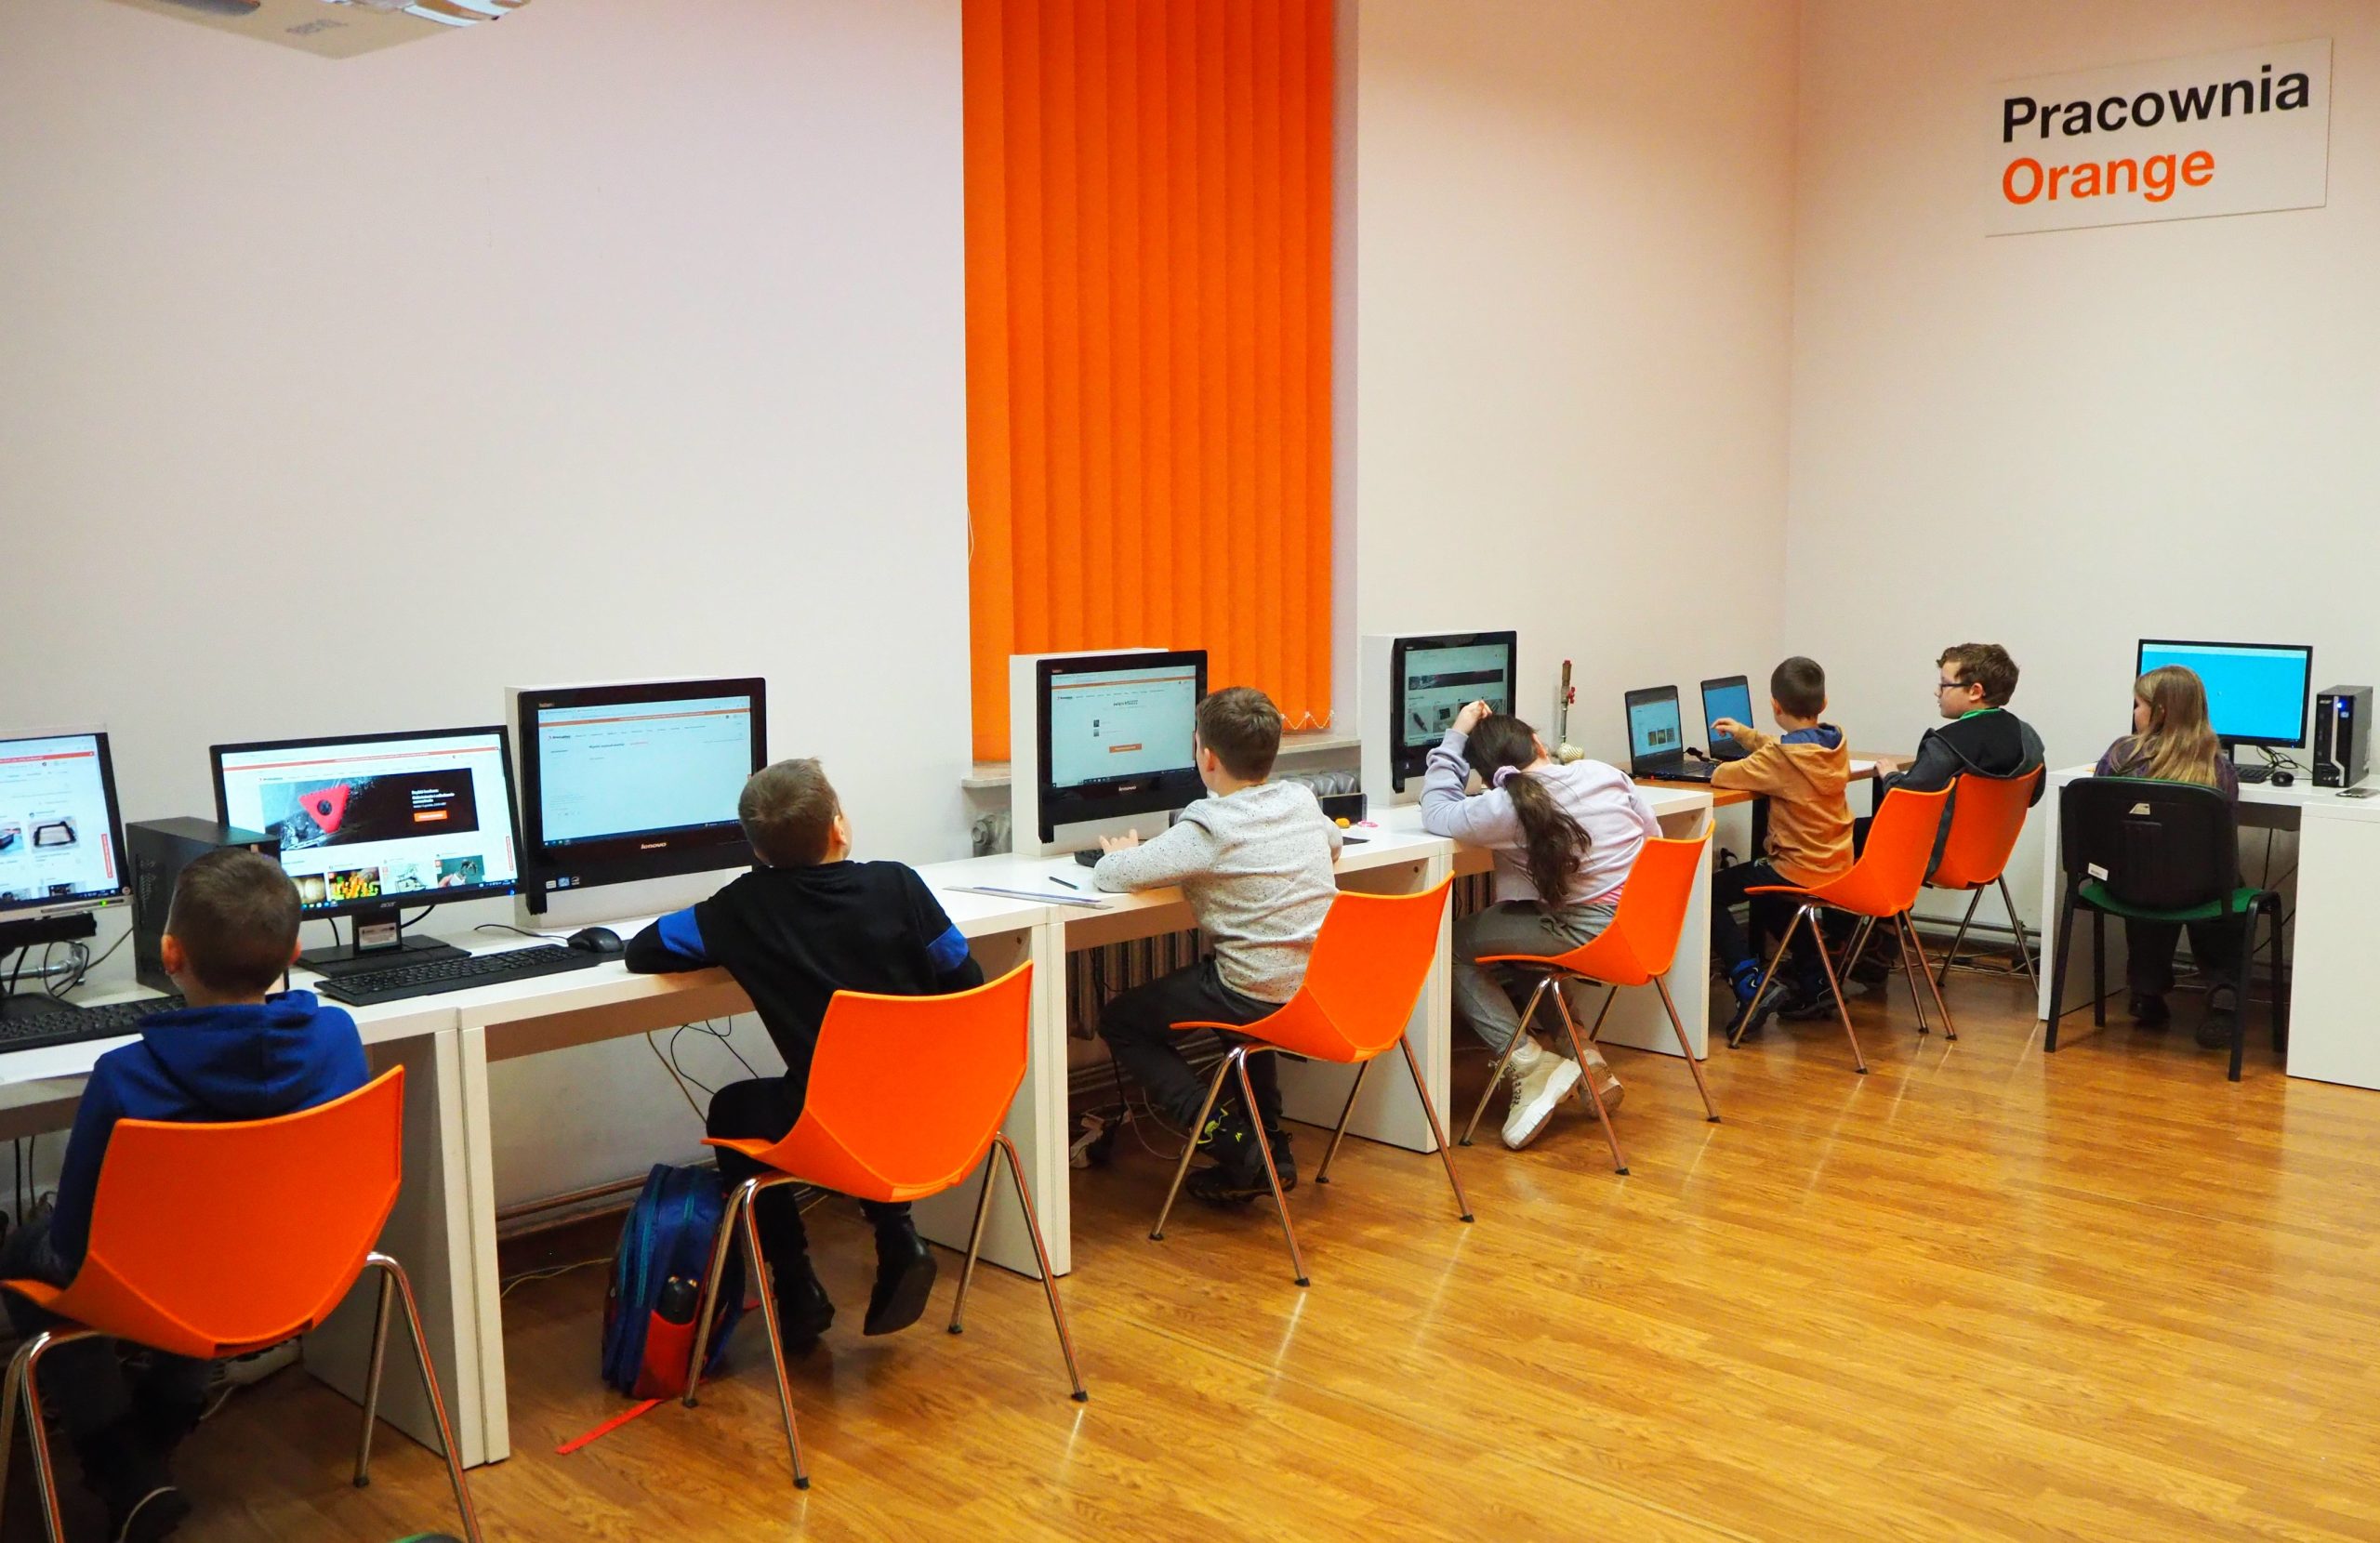 grupa dzieci przy komputerach w pracowni orange